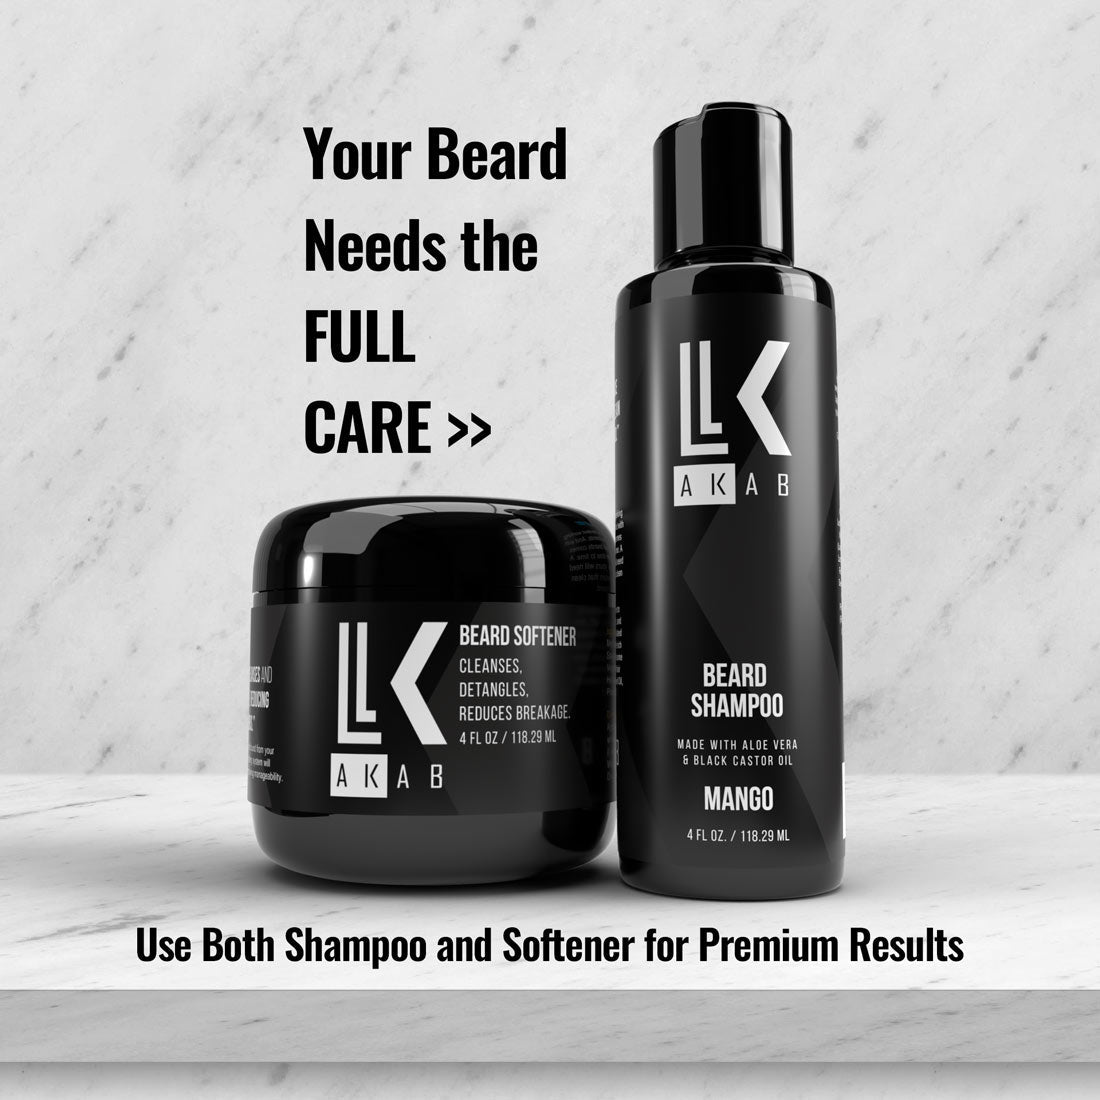 <b>Beard Softener</b> - Cleanses & Detangles Your Beard while Reducing Breakage & Split Ends - AKAB LIFE